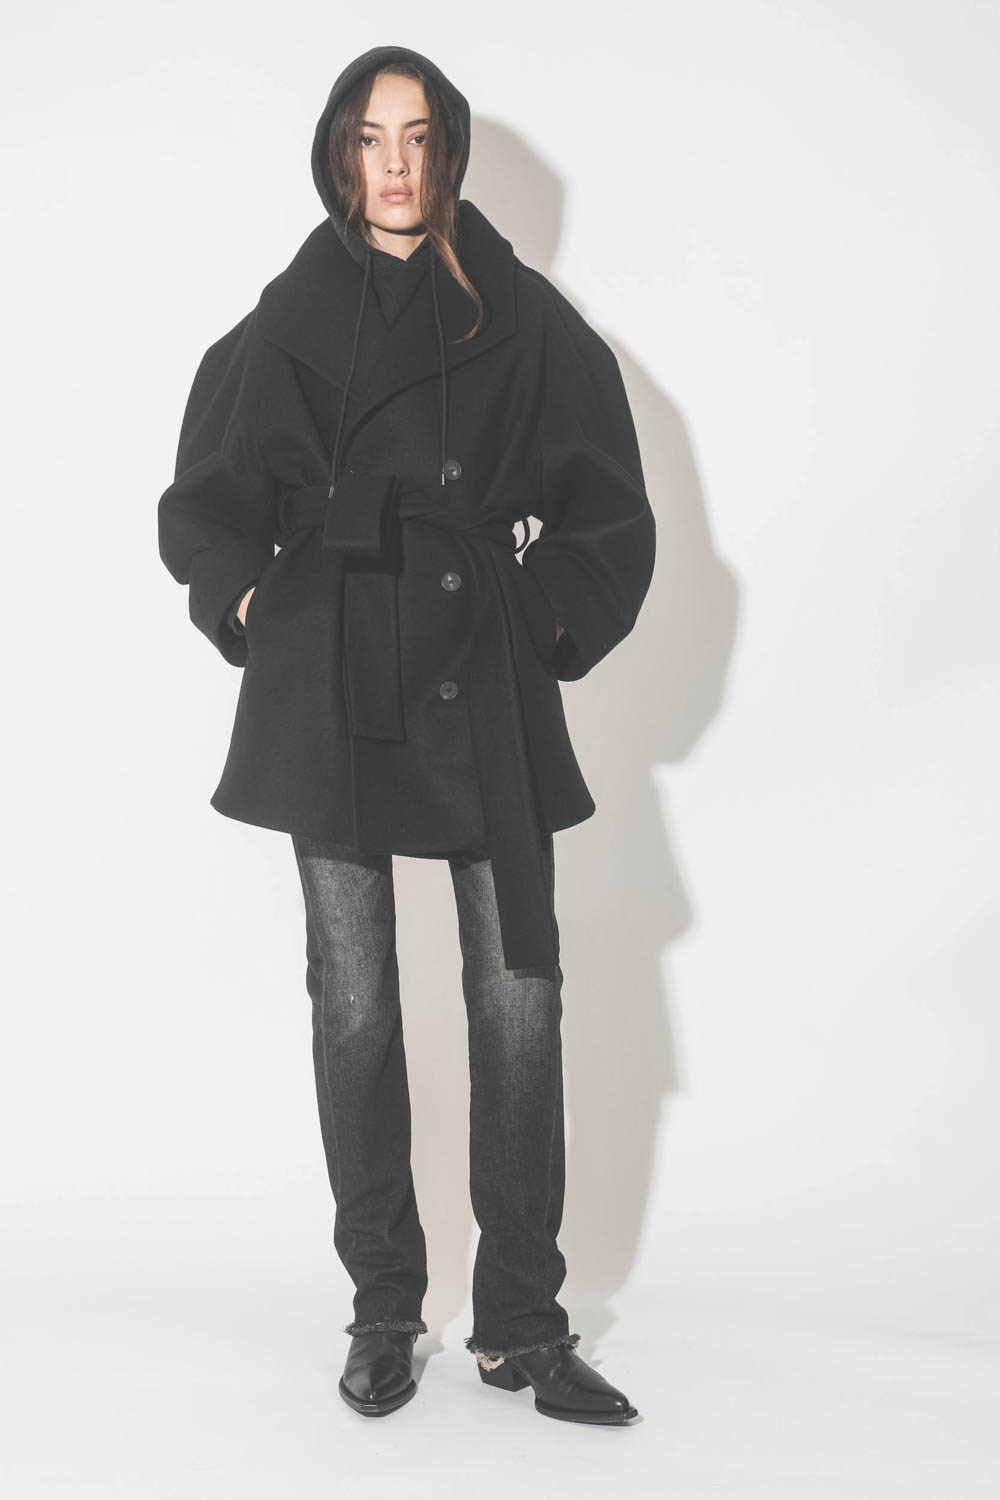 Manteau caban ceinturé en drap de laine noir Suzzane Vautrait. Porté avec un jeans noir.